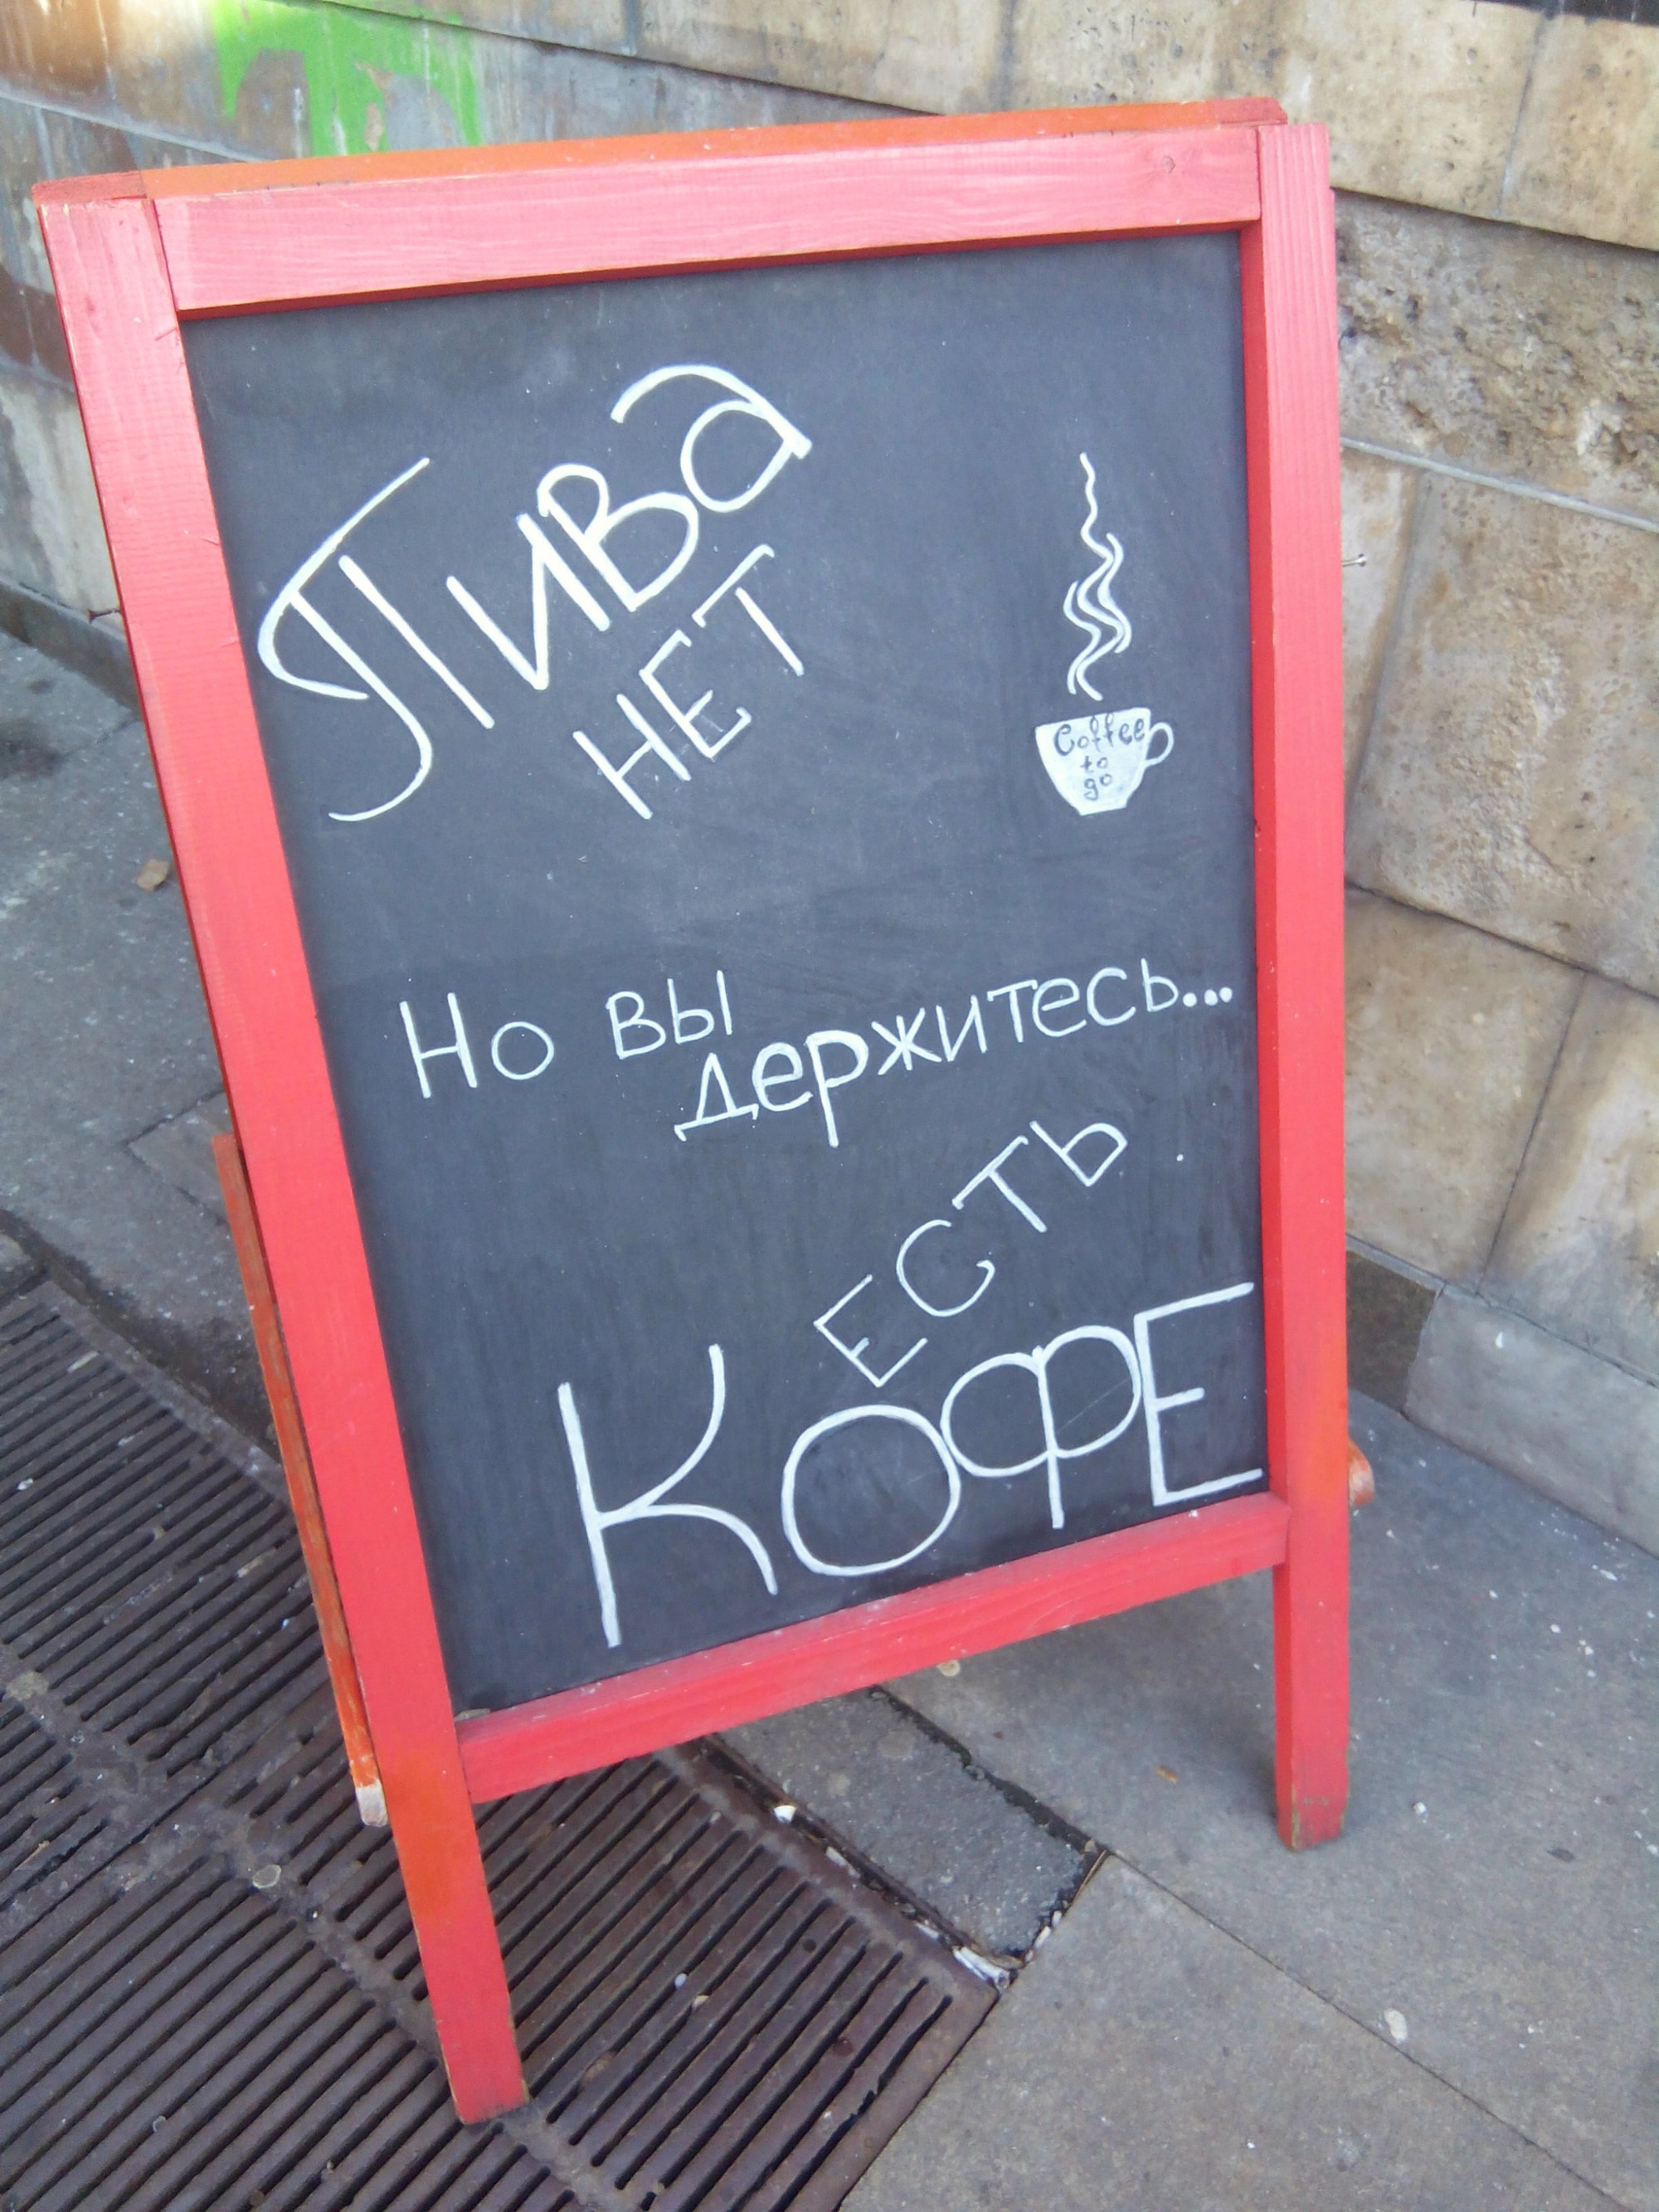 «Пива нет, но вы держитесь… Кофе есть» (Kyiv, Ukraine)